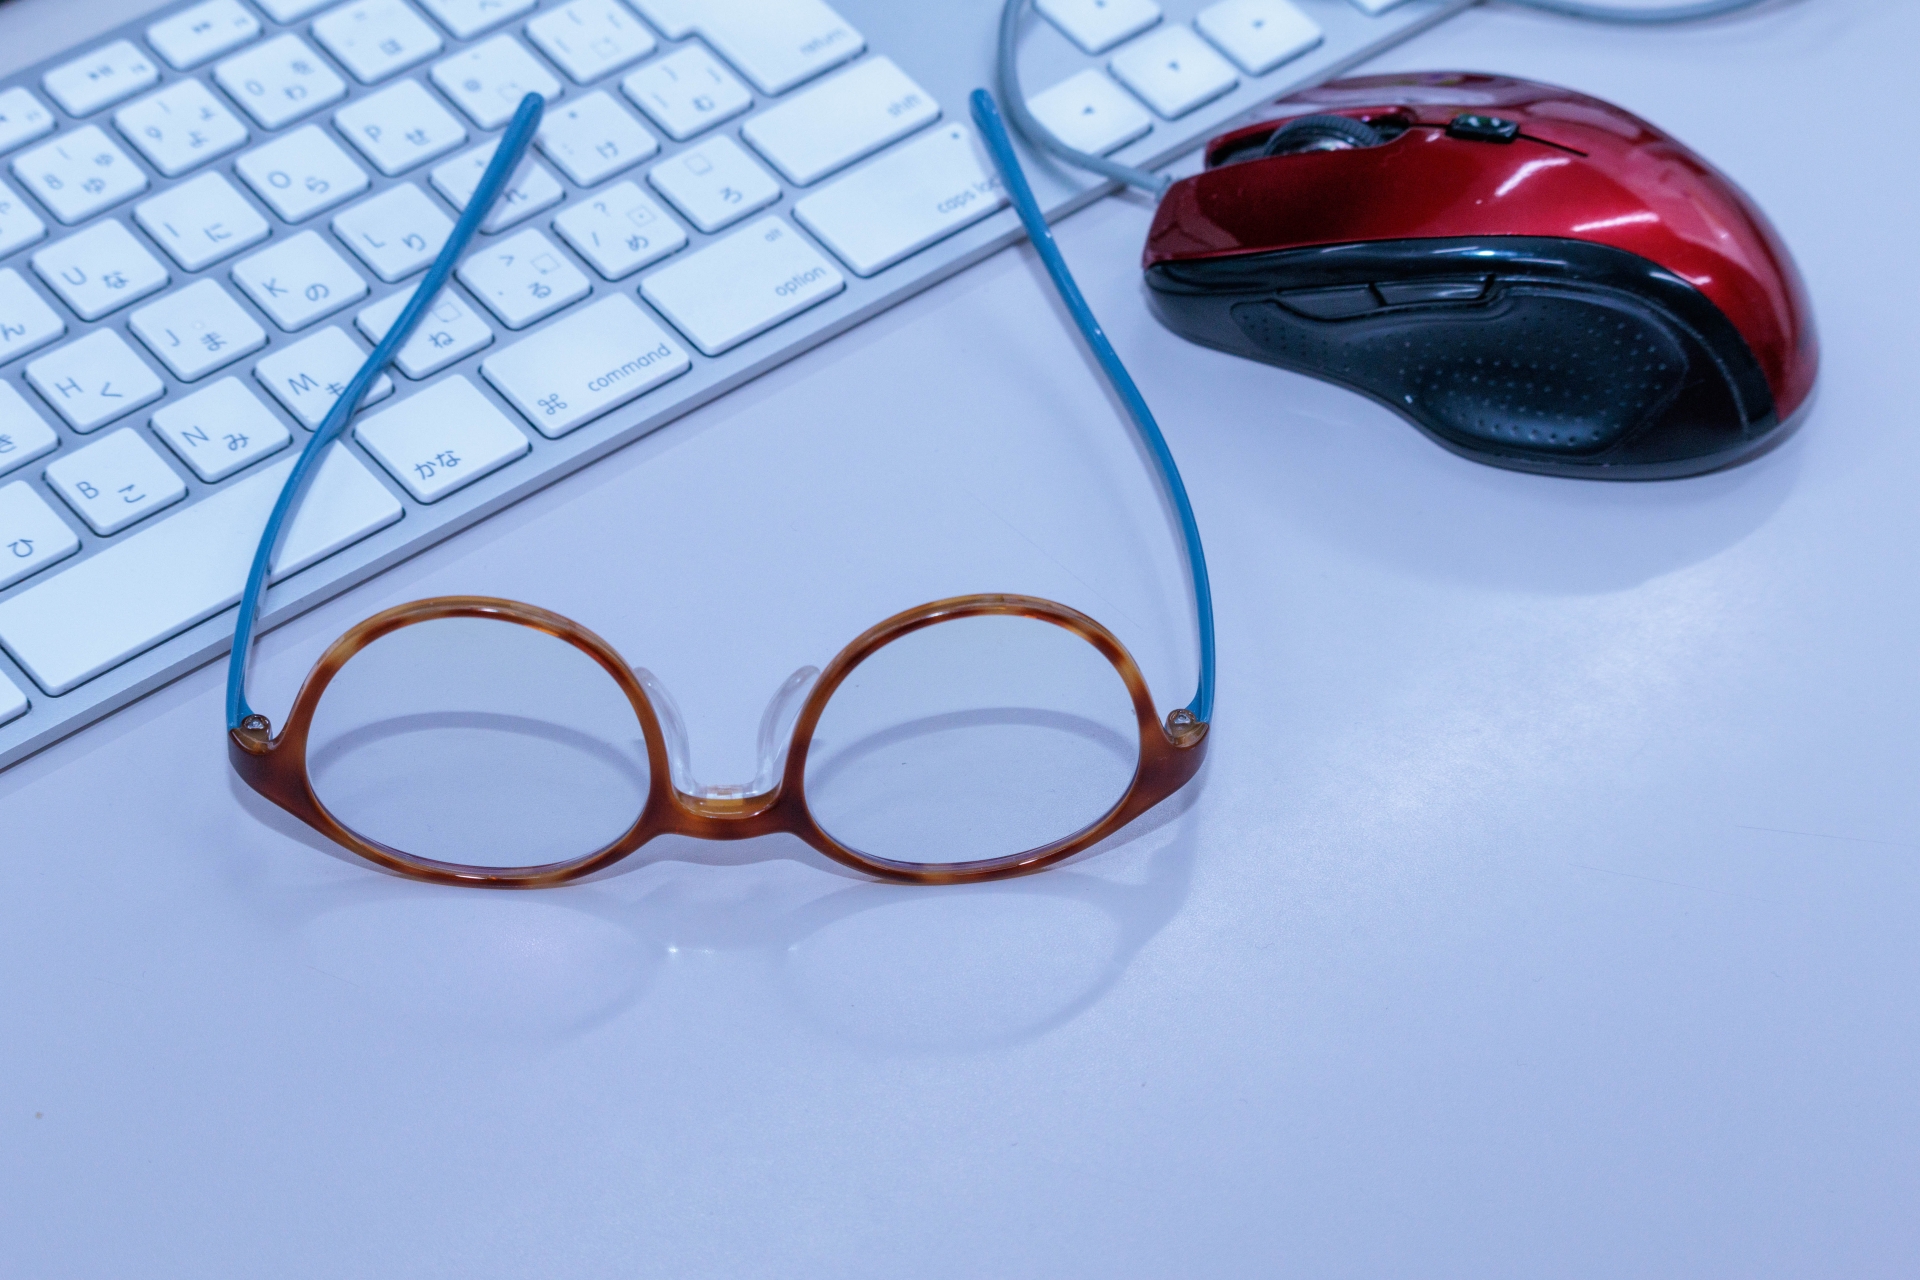 ブルーライトカットメガネとキーボードとマウス